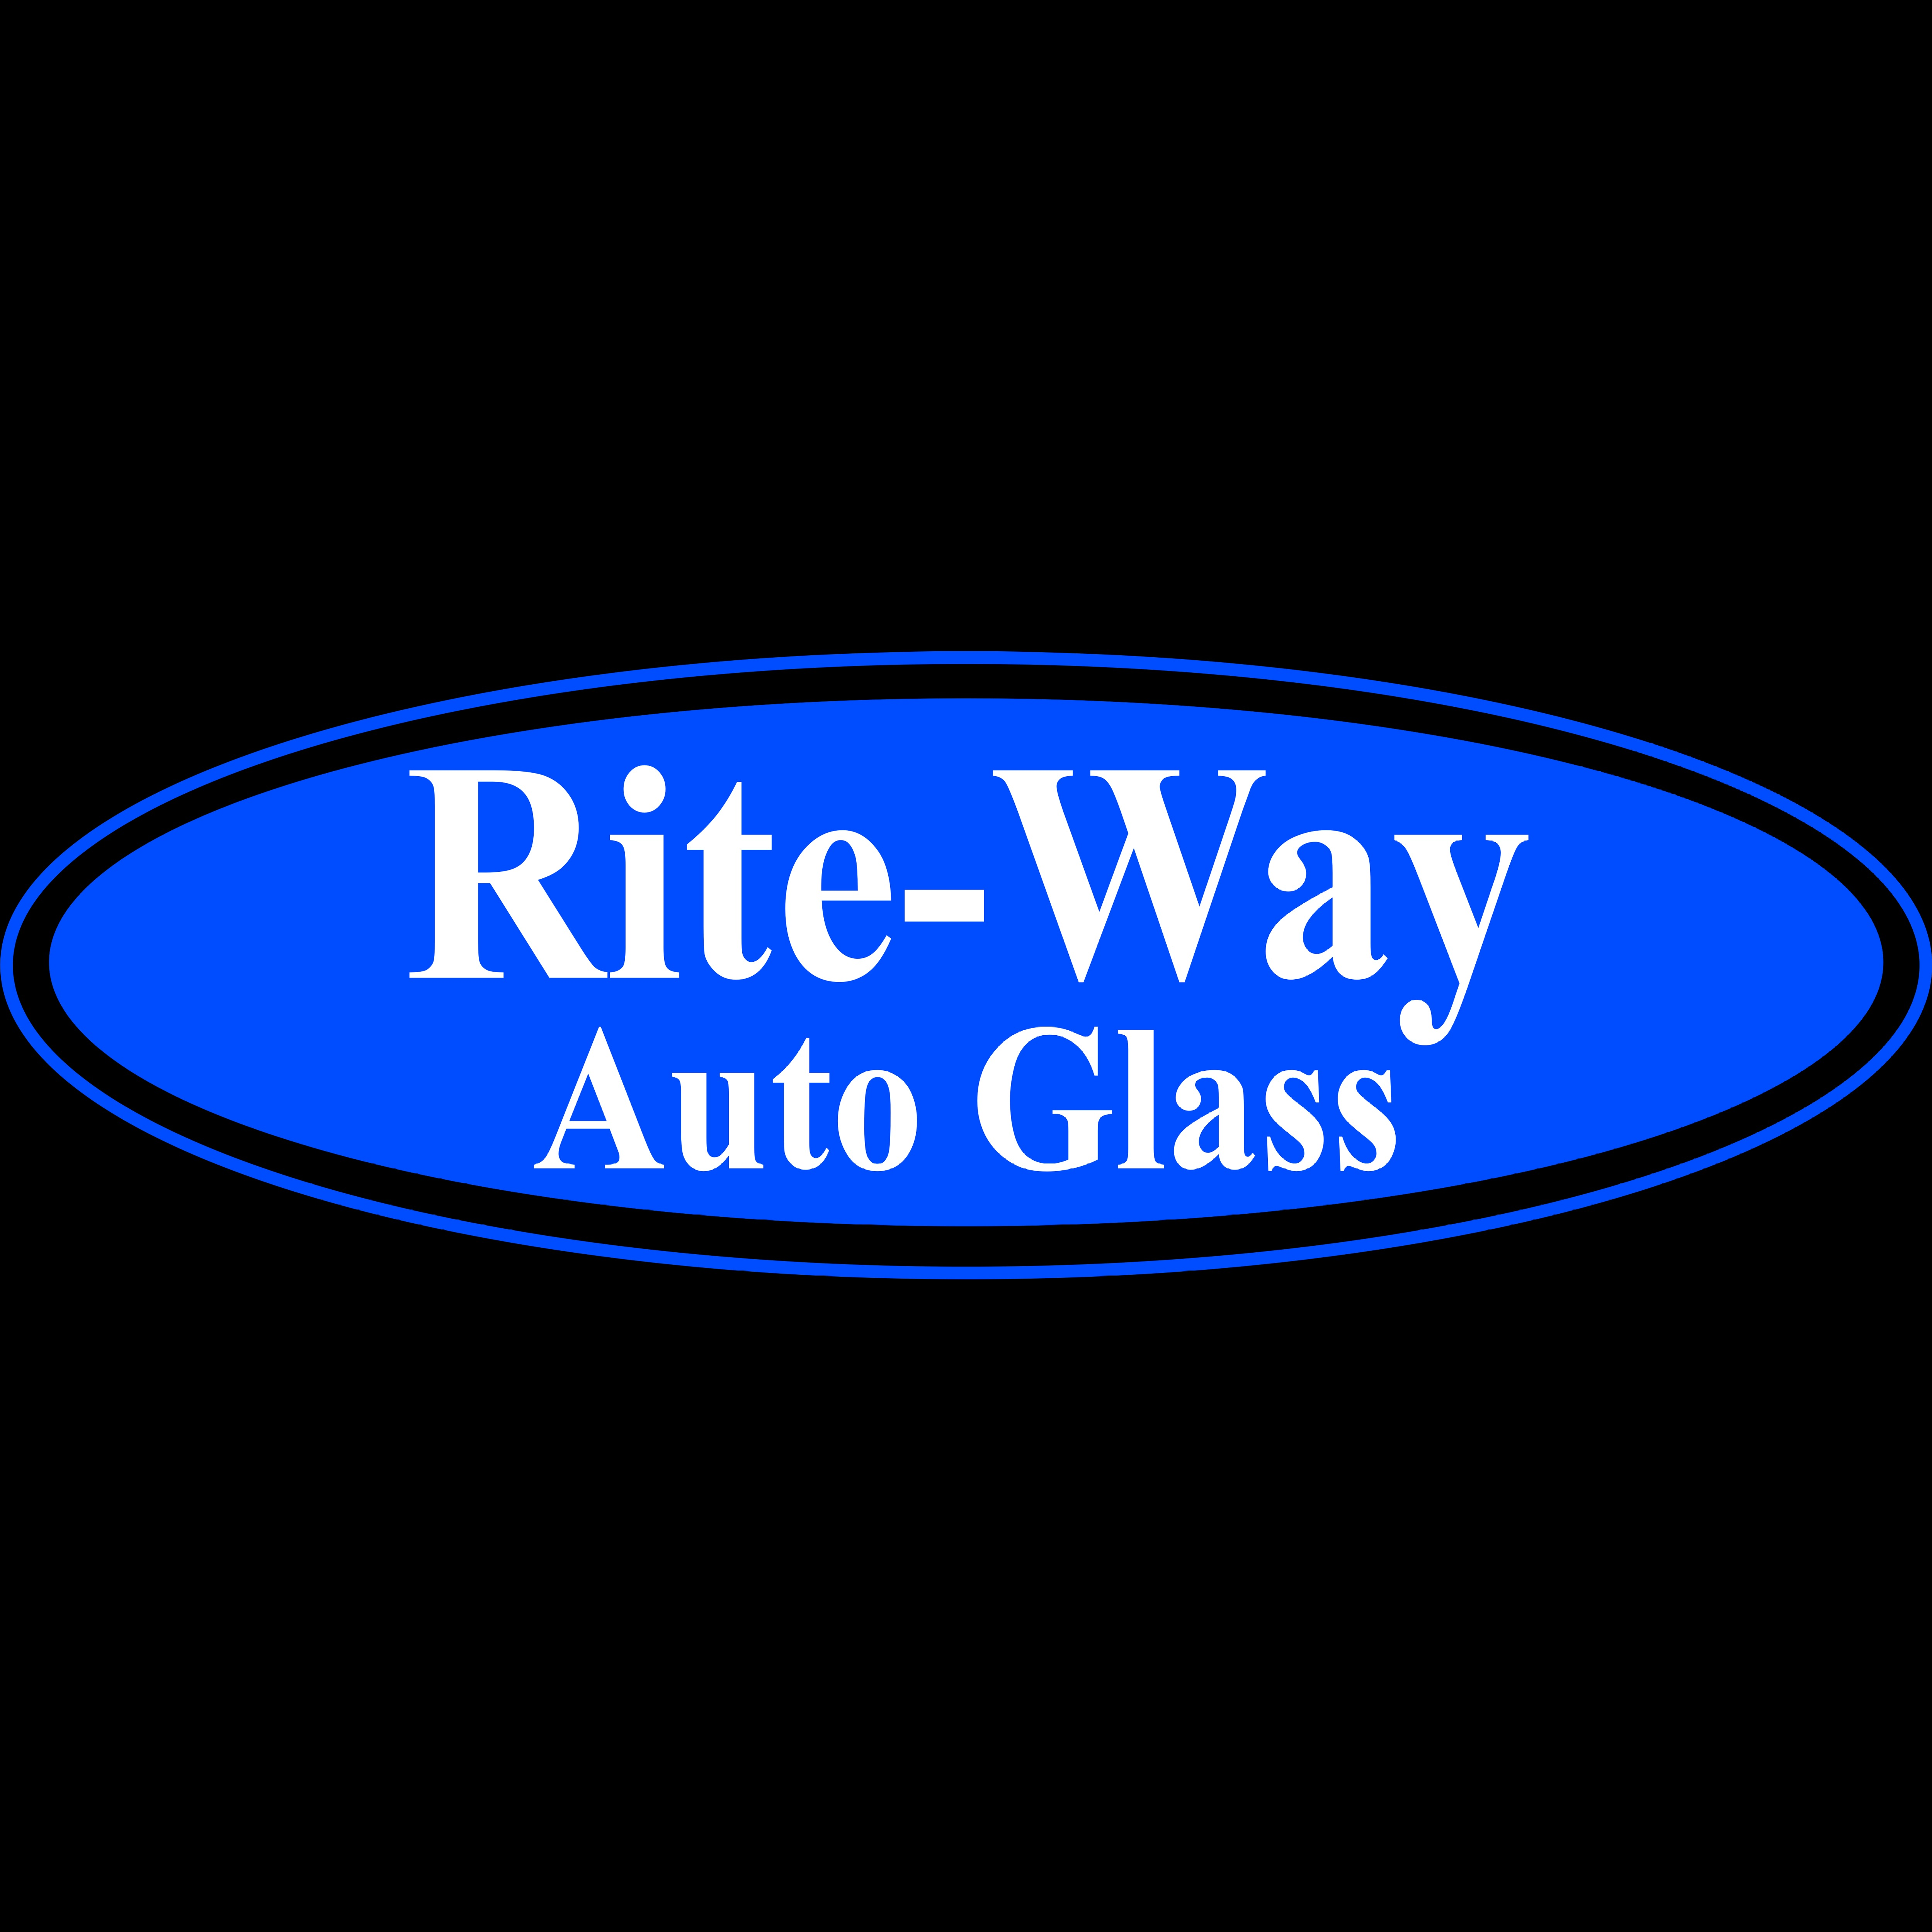 Rite-Way Auto Glass - Morehead, KY 40351 - (606)755-8705 | ShowMeLocal.com